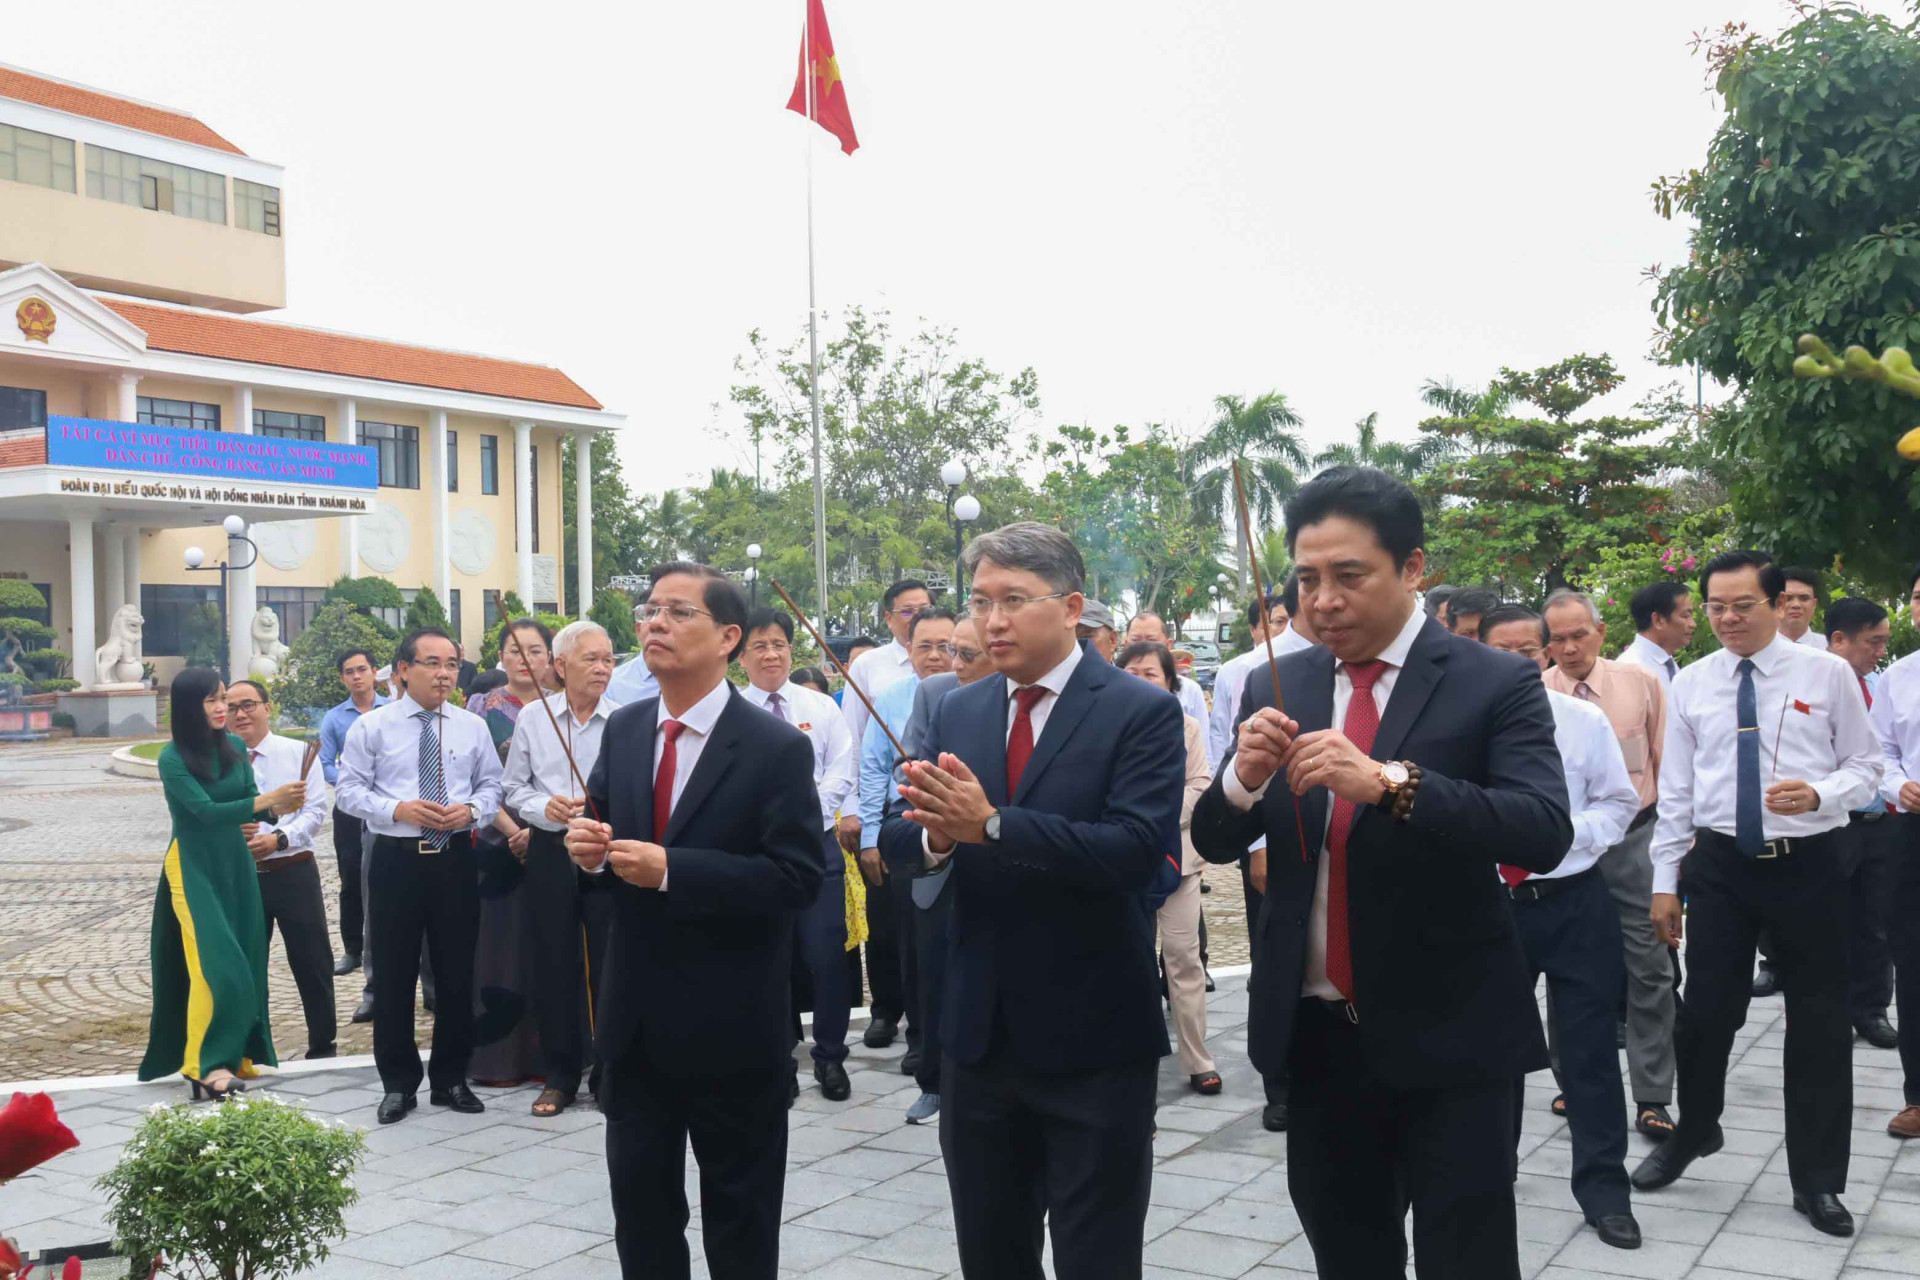 Lãnh đạo tỉnh Khánh Hòa dâng hương tưởng niệm các anh hùng, liệt sĩ trong Lễ hoàn công bia ghi nhớ sự kiện lịch sử Tết Mậu Thân năm 1968. 